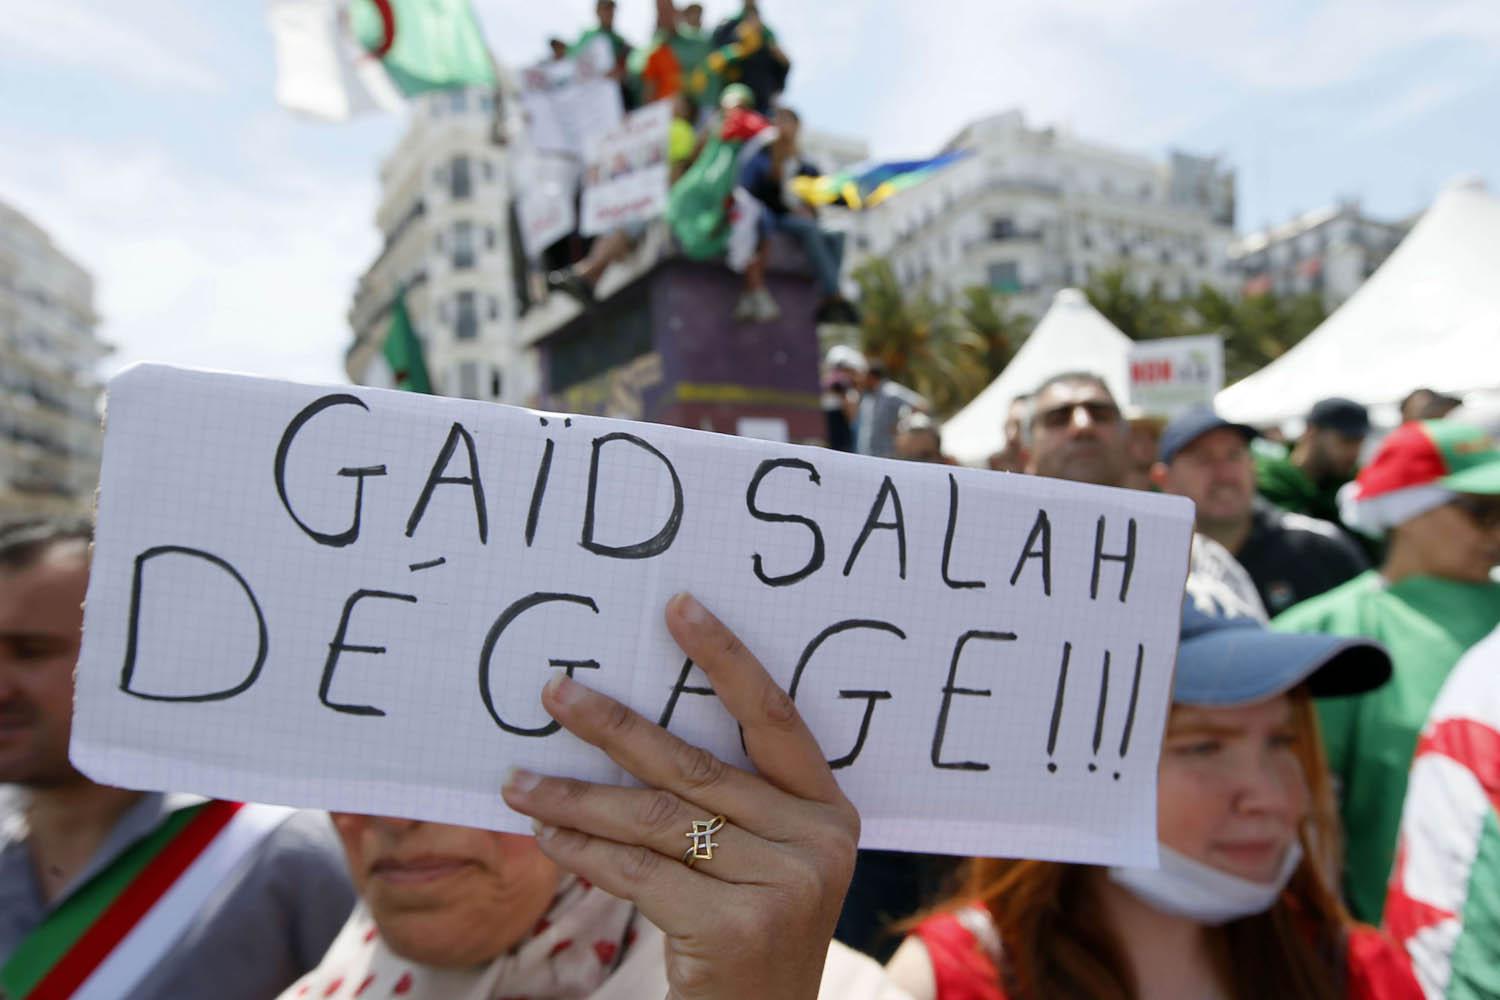 متظاهرون في الجزائر ضد سلطة قائد الجيش أحمد قايد صالح